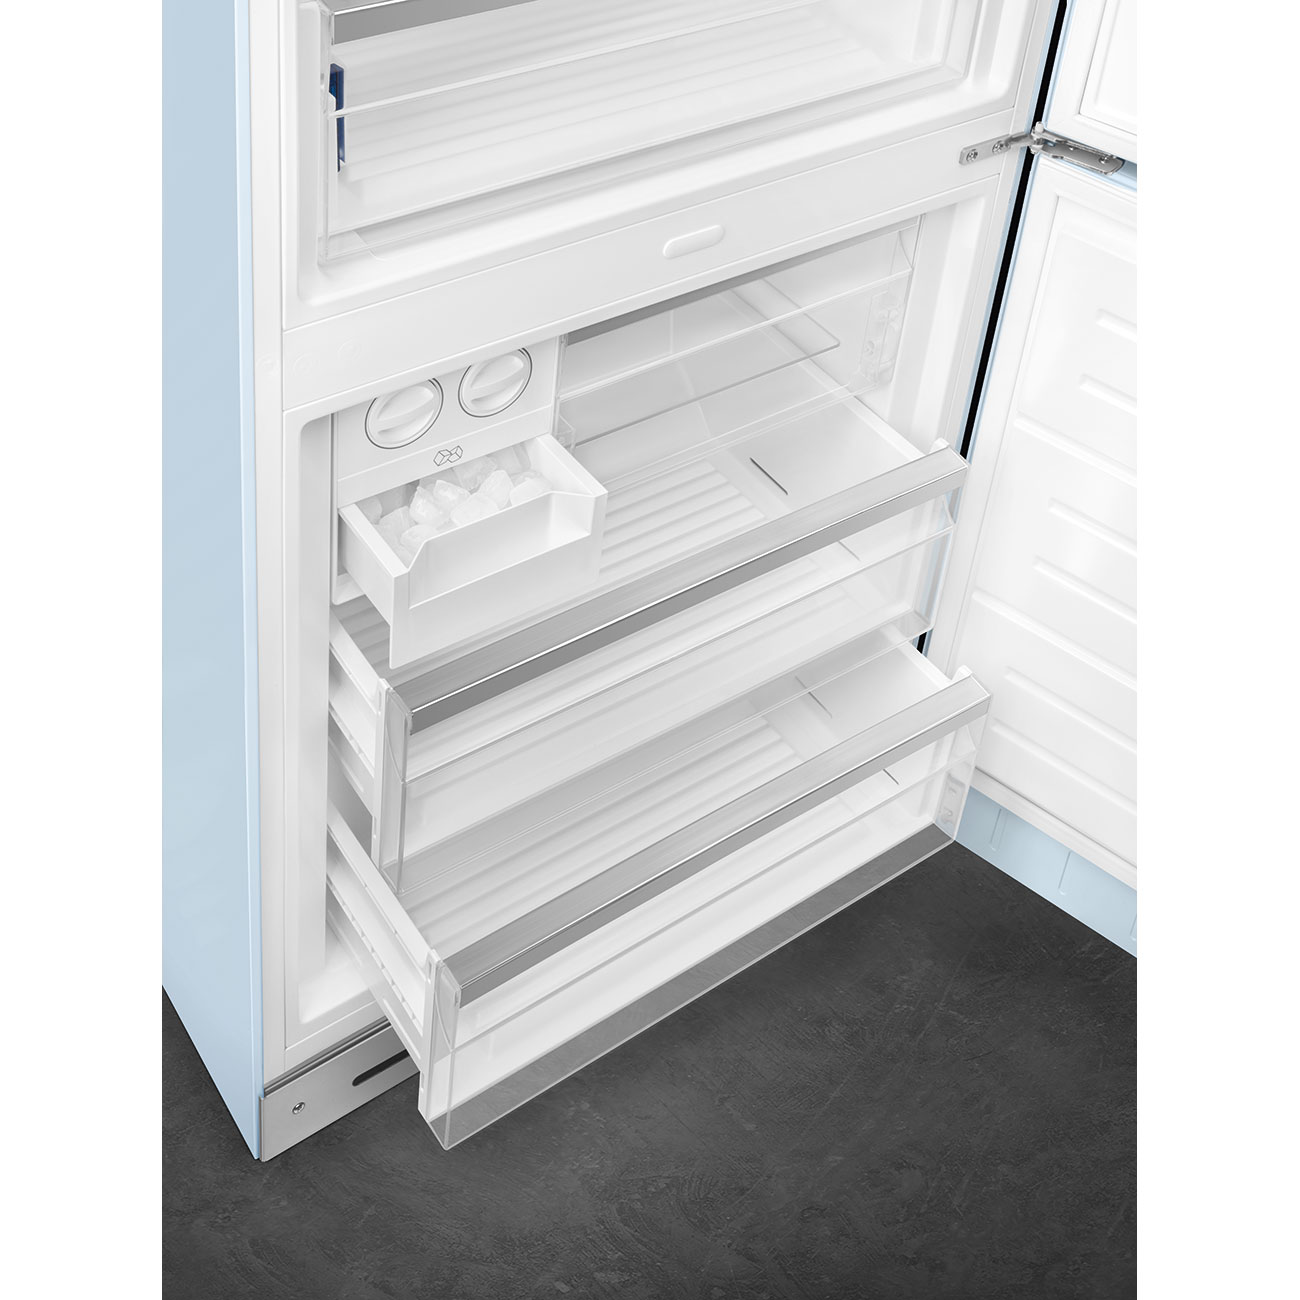 Pastellblau Retro-Kühlschränke von Smeg_10